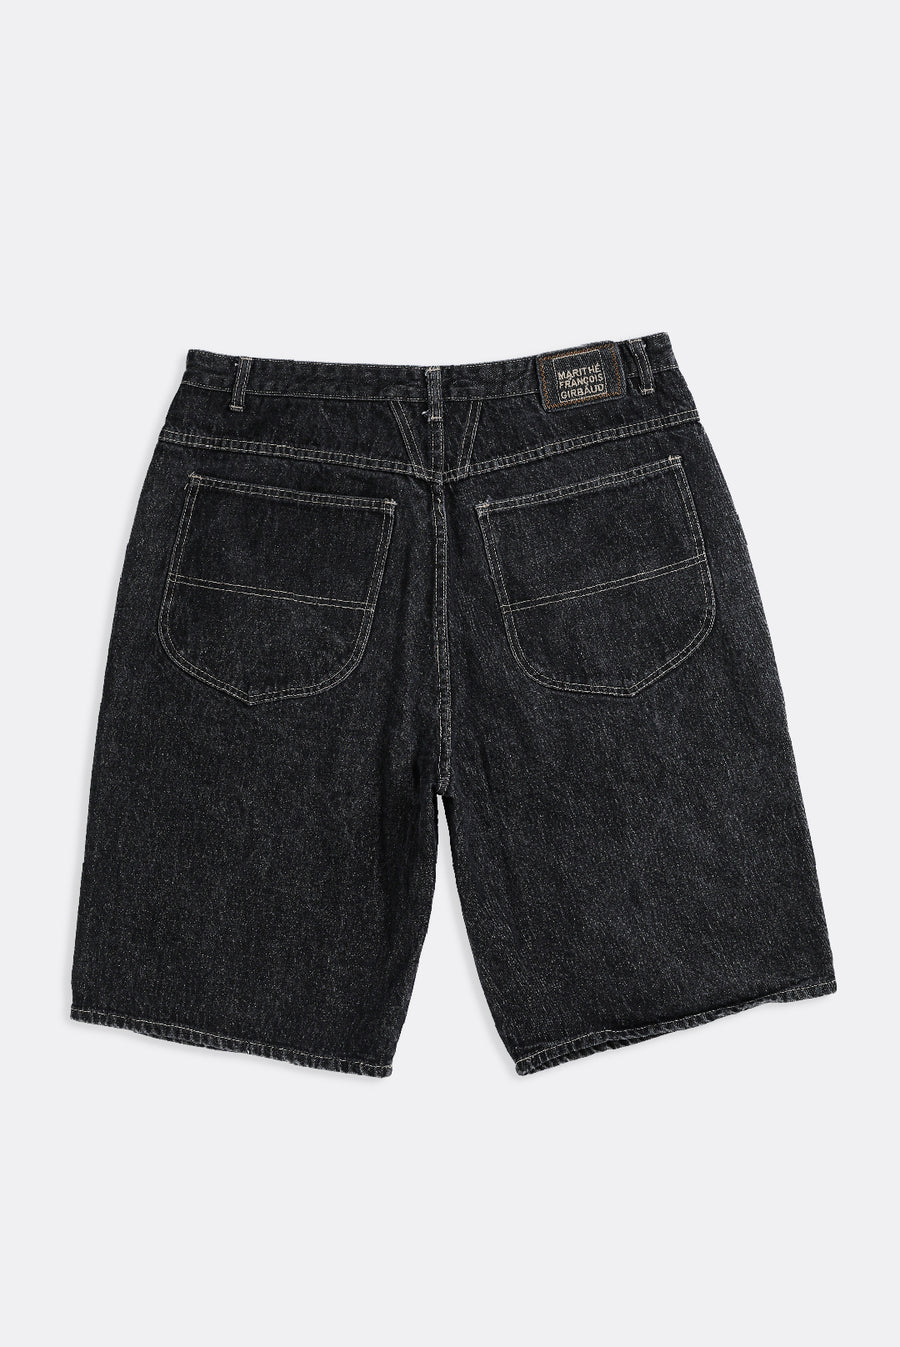 Vintage Girbaud Denim Shorts - W36, W38